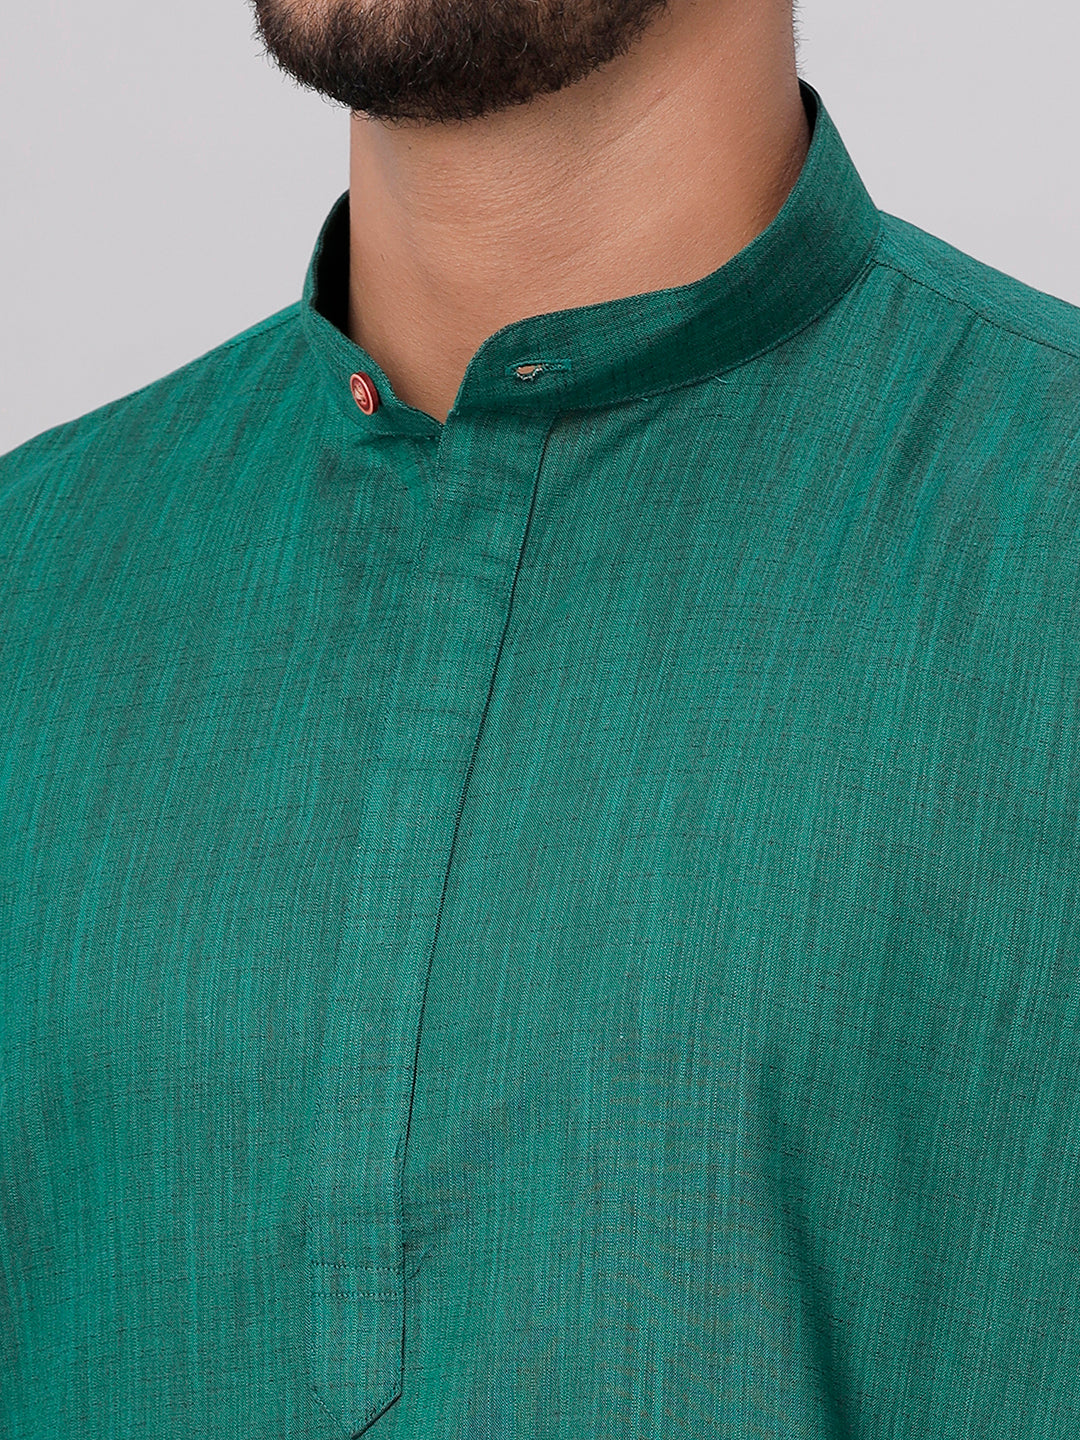 Mens Cotton Full Sleeves Dark Green Medium Length Pocket Kurta FS5-Zoom view